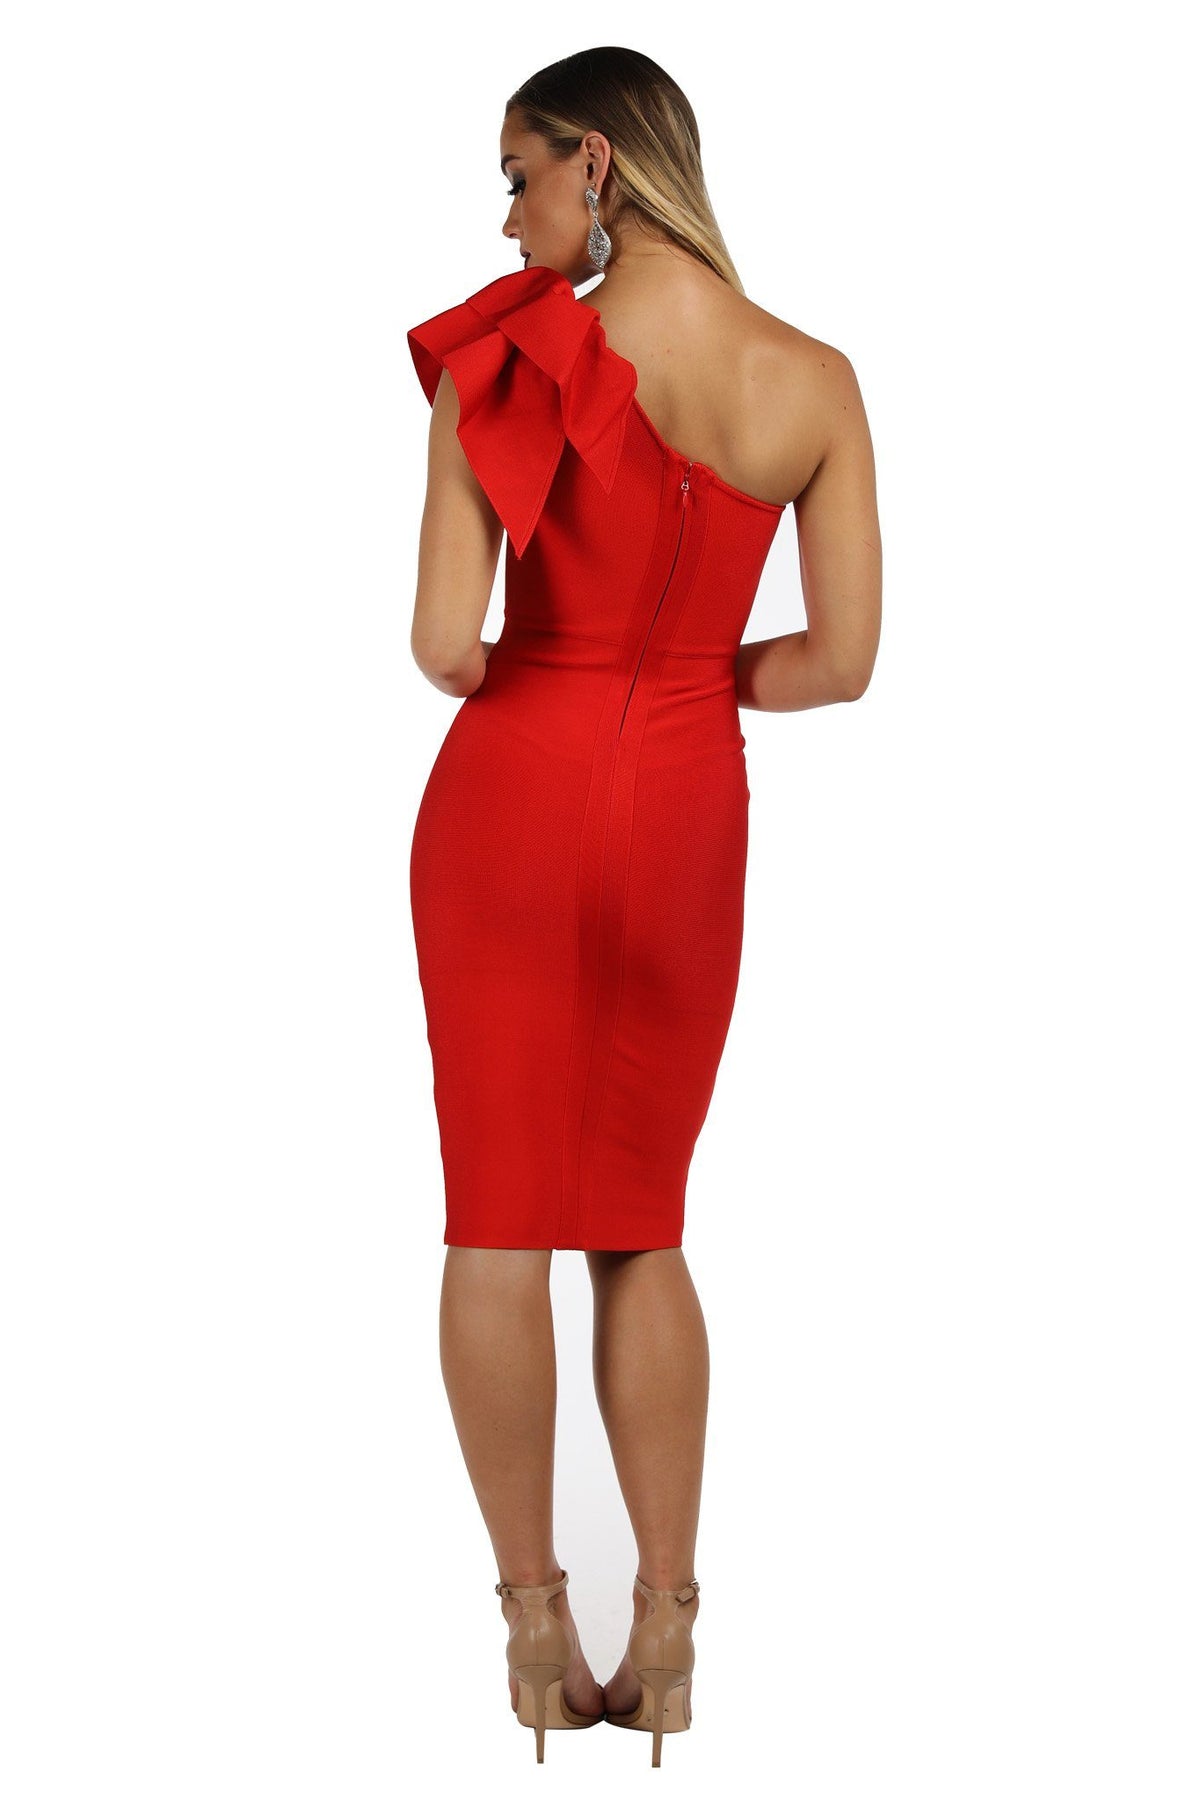 Freya One Shoulder Ruffle Dress - Red (XS - Clearance Sale)